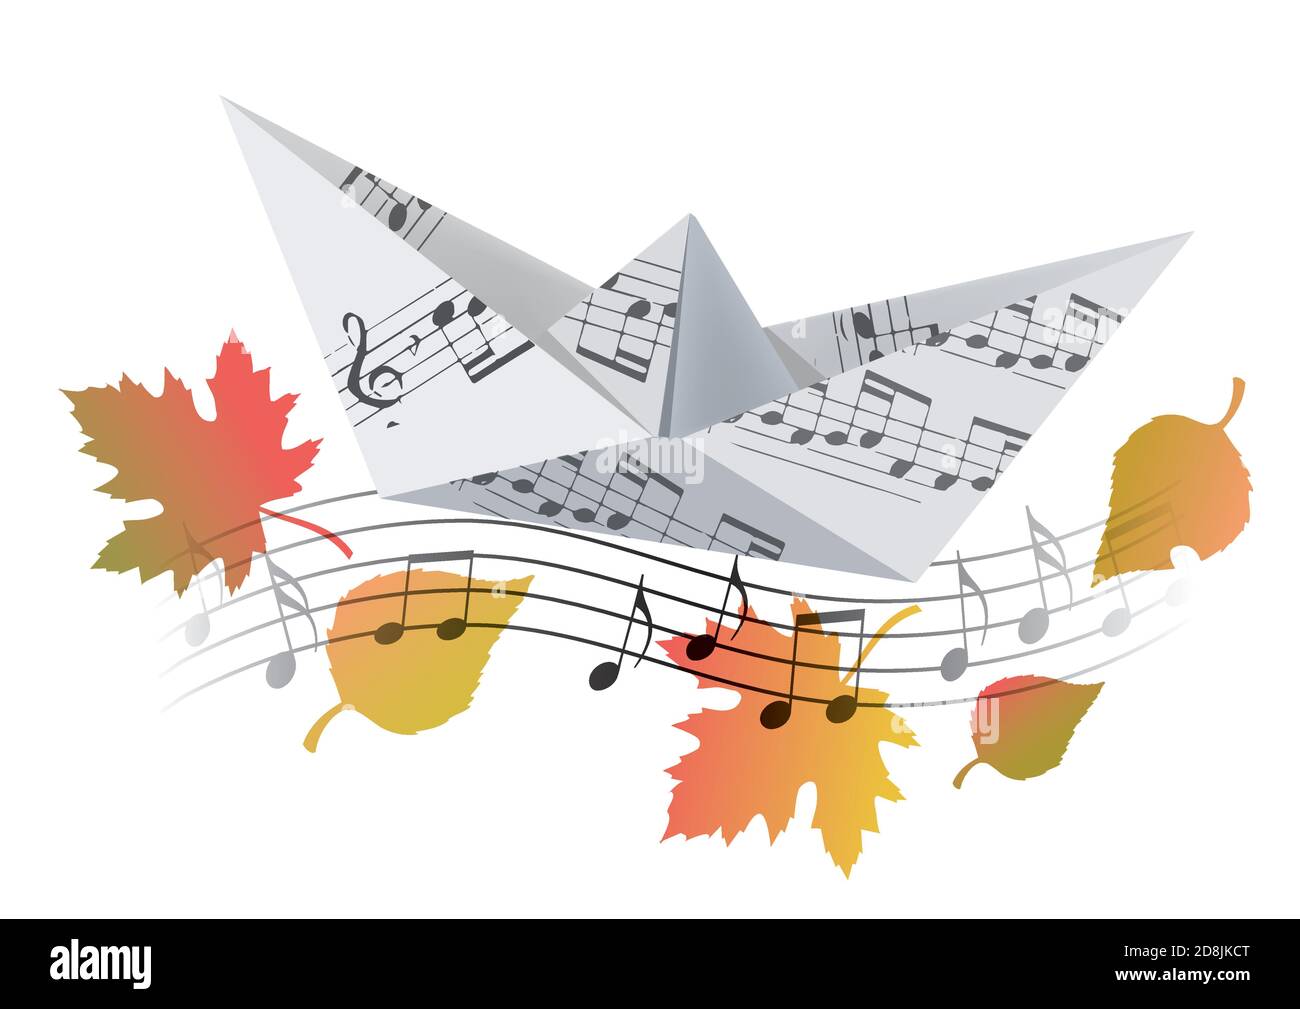 Imbarcazione Origami con note musicali e foglie autunnali. Illustrazione del modello cartaceo della barca con note musicali che simboleggiano la canzone autunnale. Vettore disponibile. Illustrazione Vettoriale